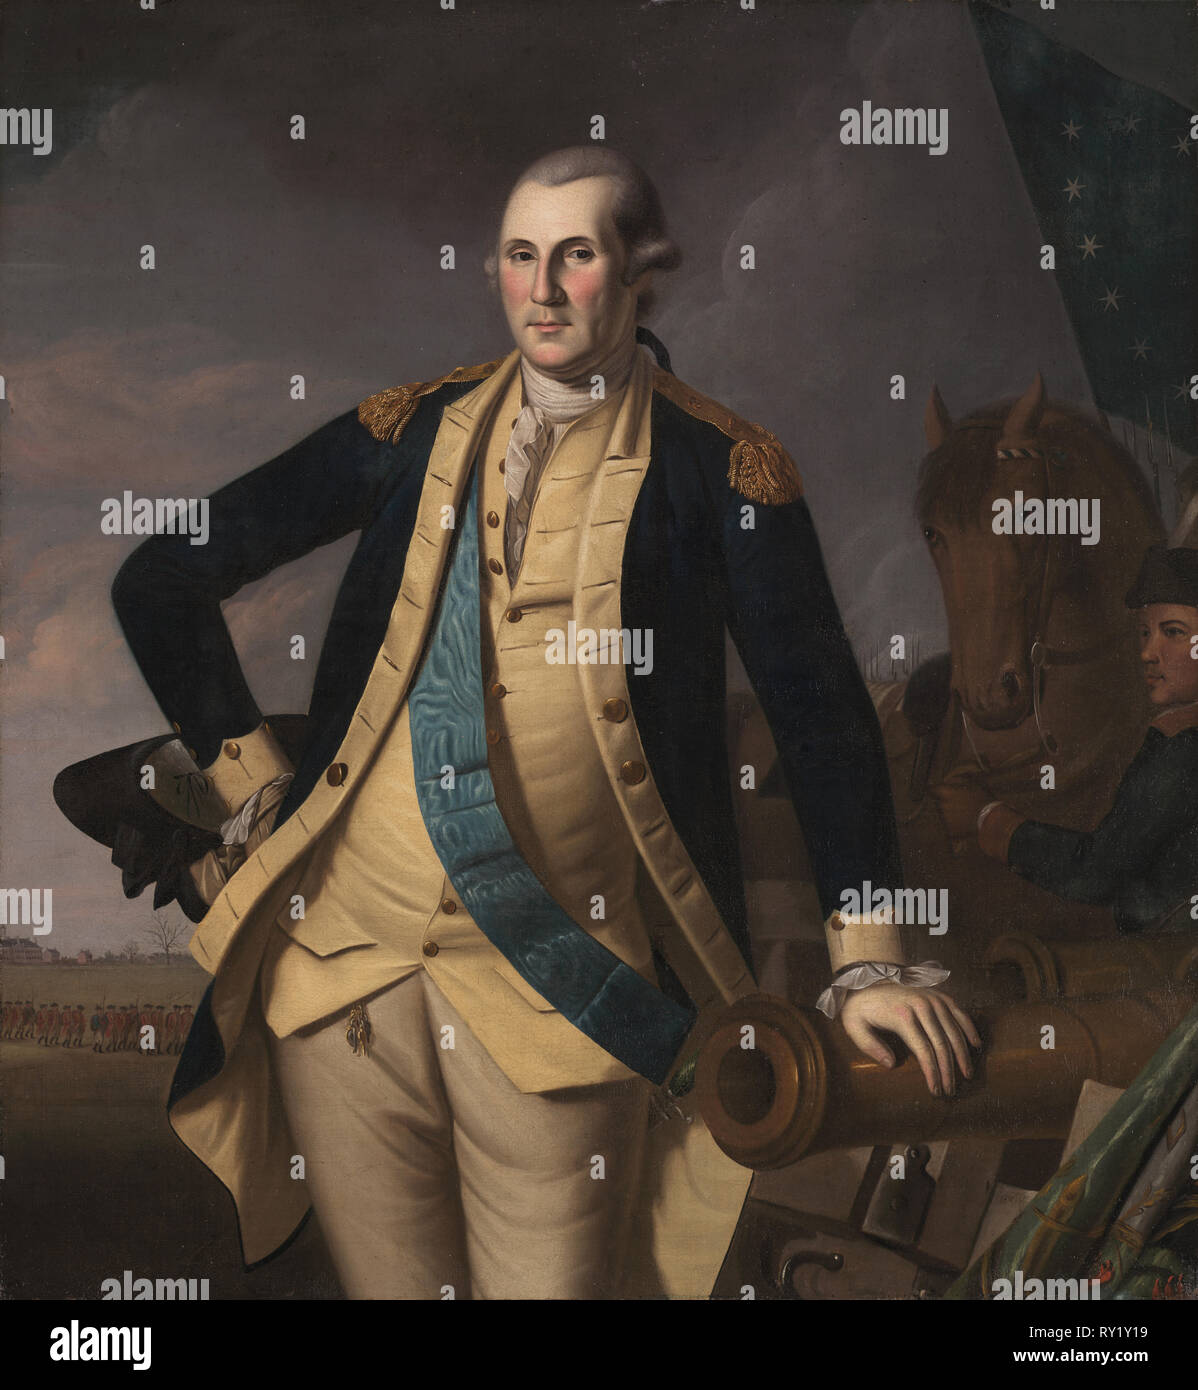 George Washington in der Schlacht von Princeton, C. 1779. Und Werkstatt Charles Willson Peale (American, 1741-1827). Öl auf Leinwand, gerahmt: 153 x 144 x 7 cm (60 1/4 x 56 11/16 x 2 3/4 in.); ohne Rahmen: 131 x 121,6 cm (51 9/16 x 47 7/8 in Stockfoto